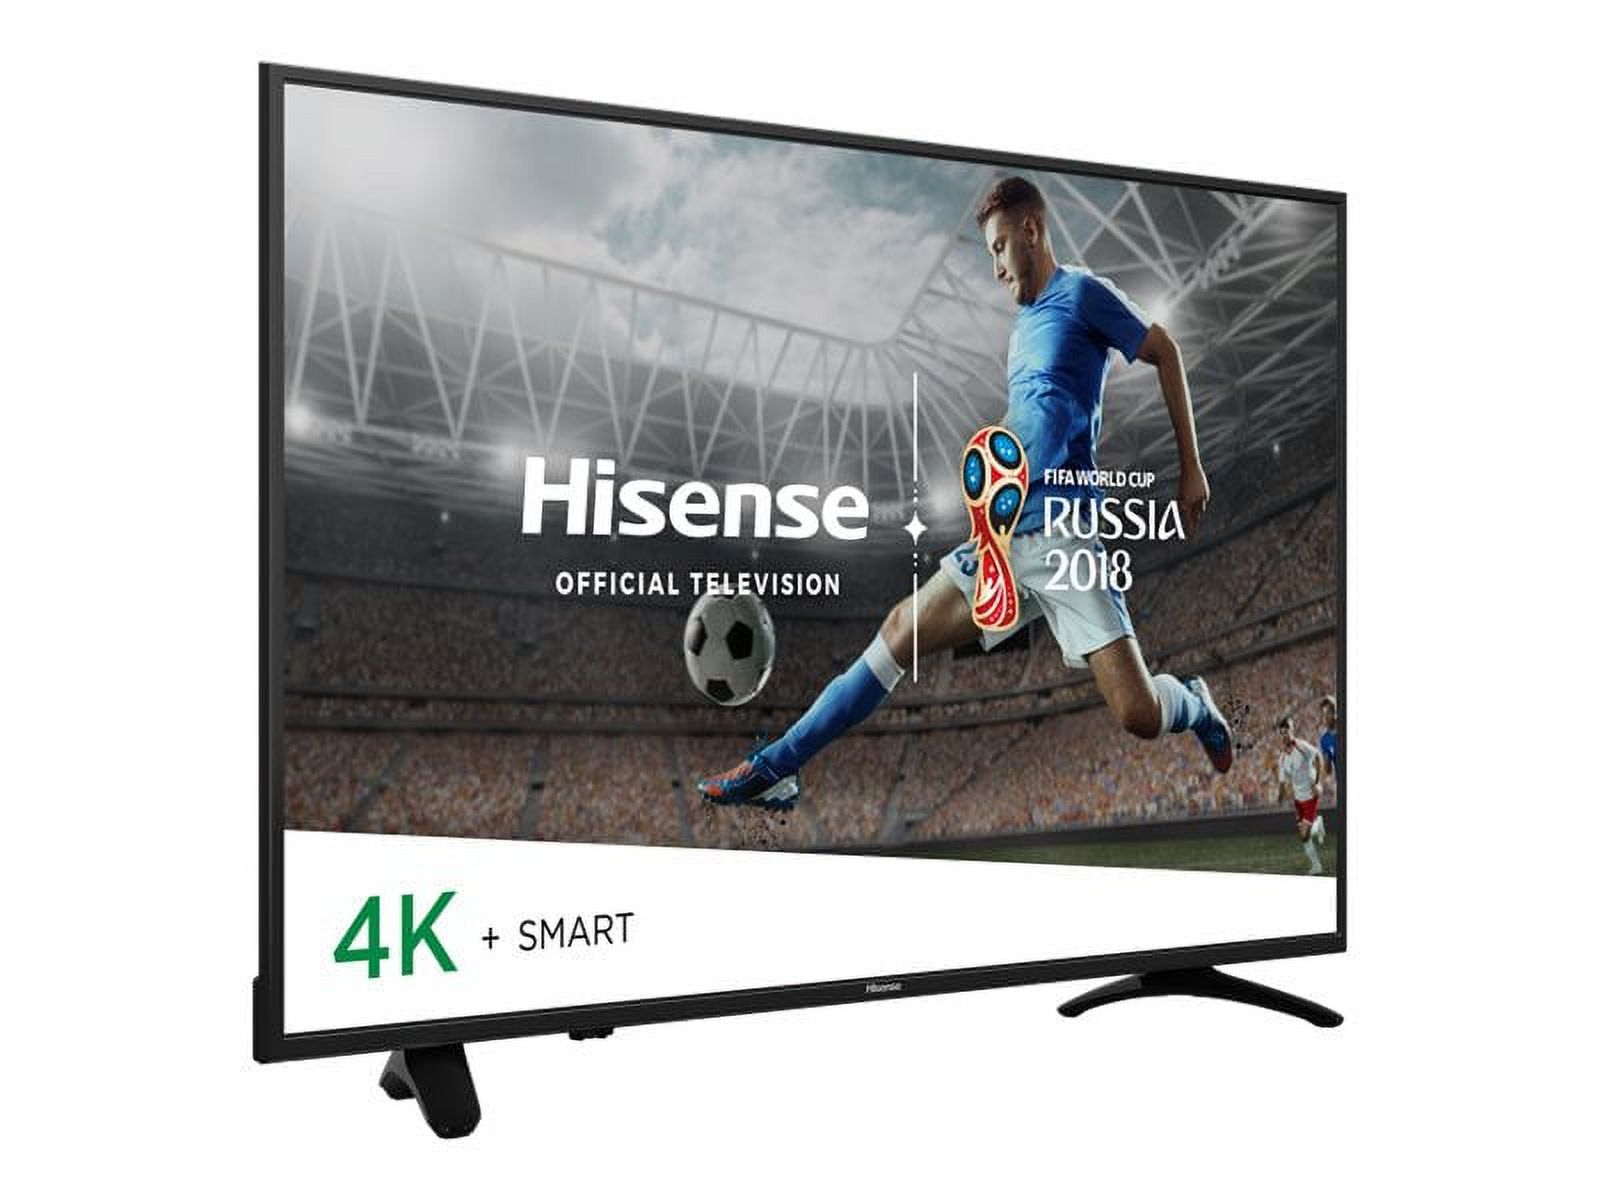 Hisense 55H8E - 55" Diagonal Class (54.6" viewable) - H8 Series LED-backlit LCD TV - Smart TV - 4K UHD (2160p) 3840 x 2160 - HDR - direct-lit LED - image 2 of 8